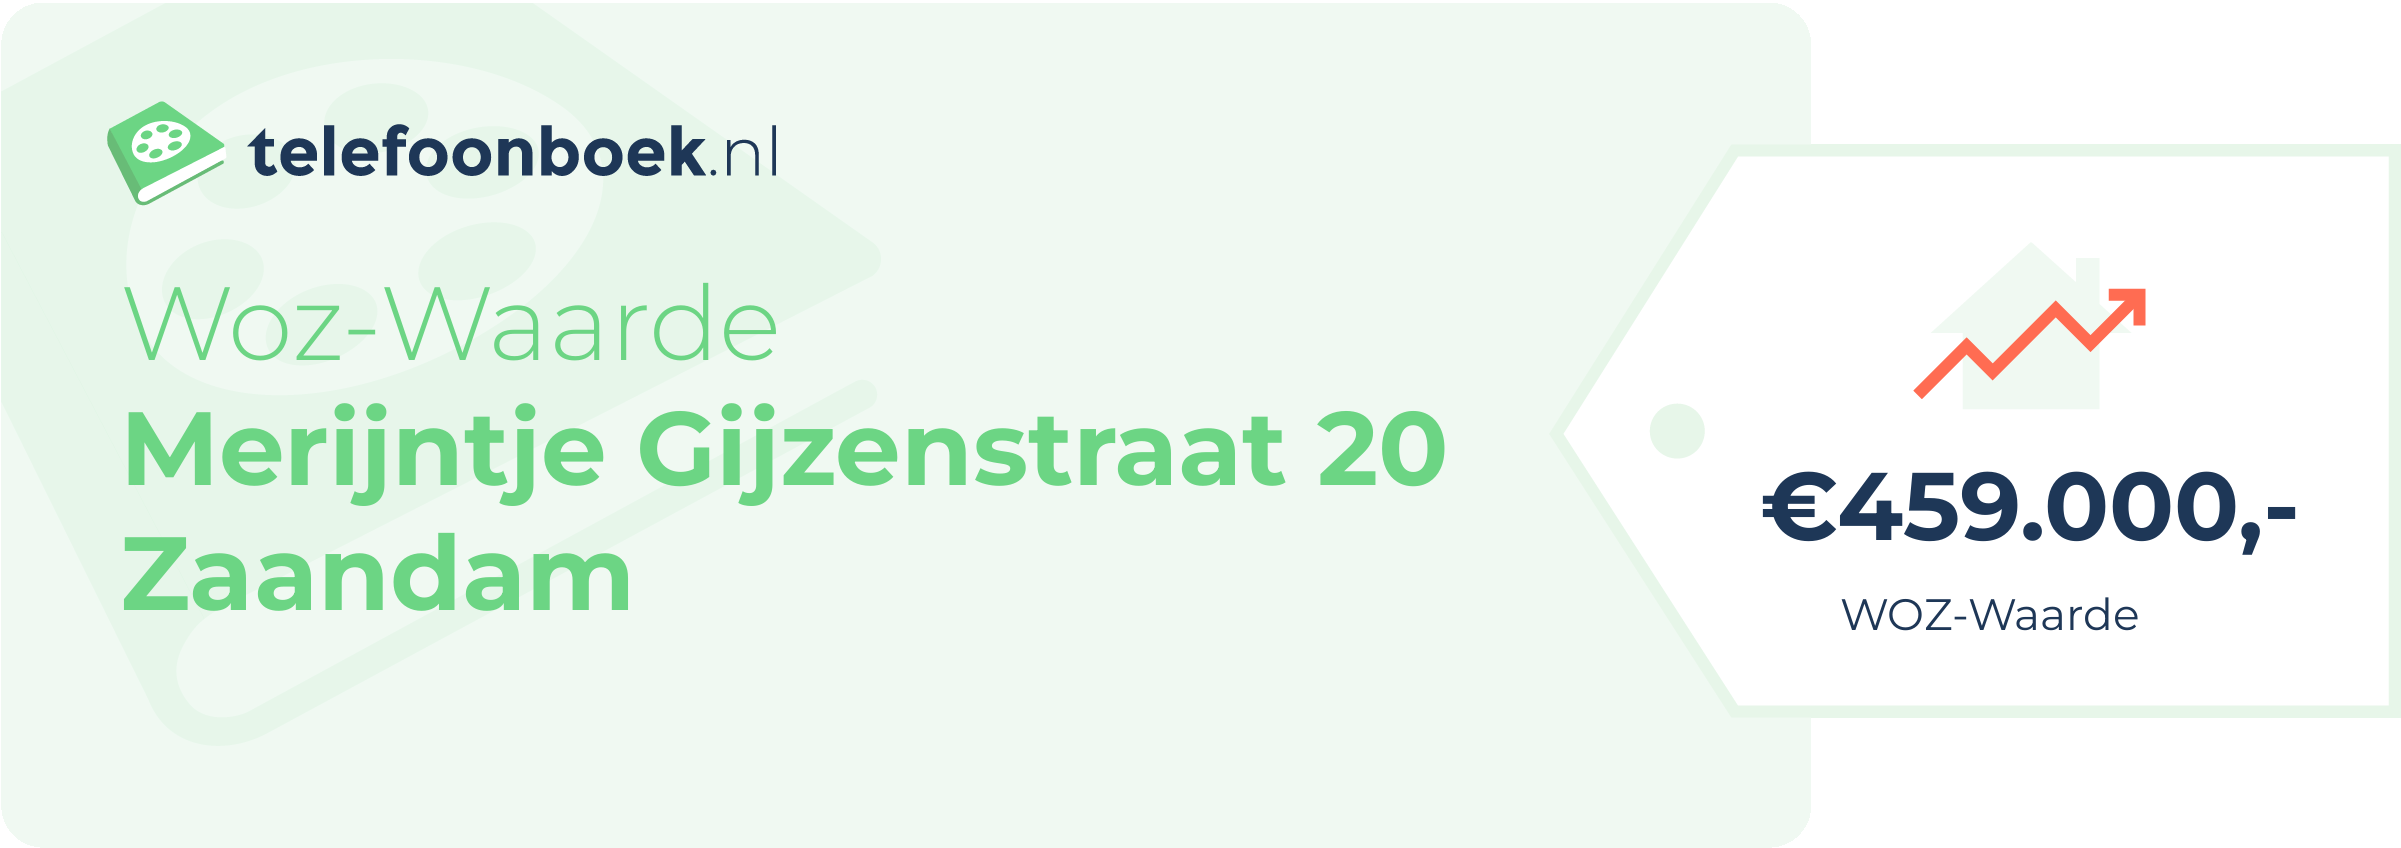 WOZ-waarde Merijntje Gijzenstraat 20 Zaandam